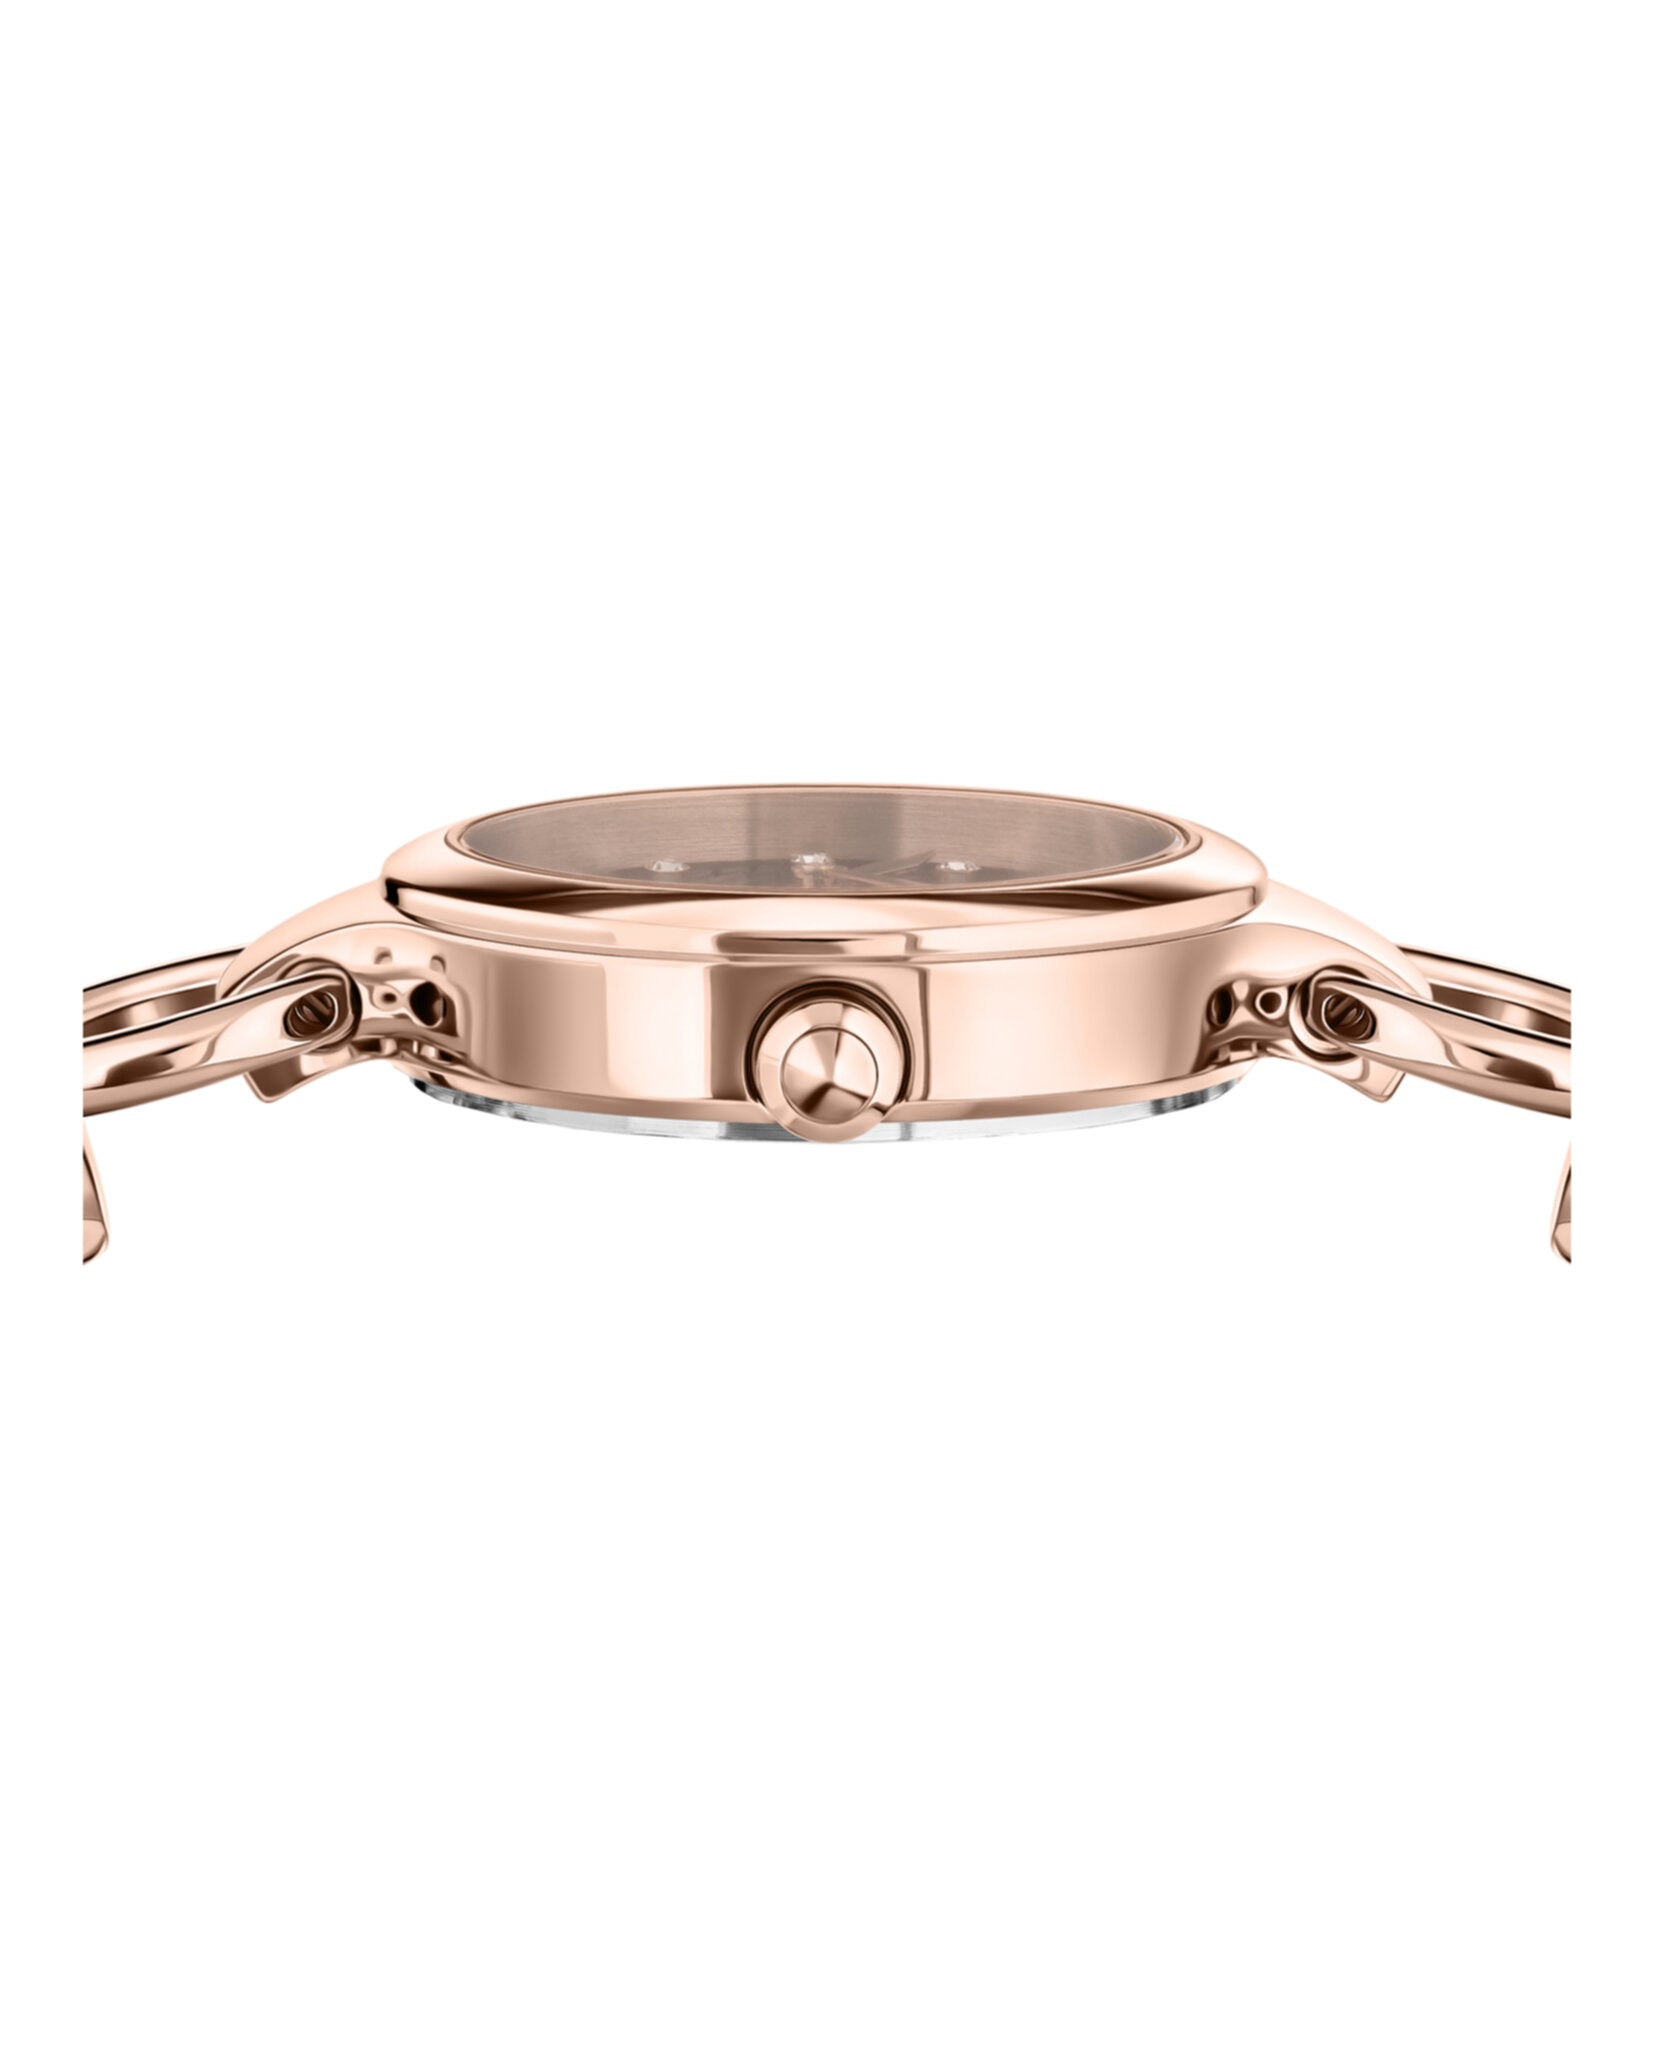 Broadwood Bracelet Watch